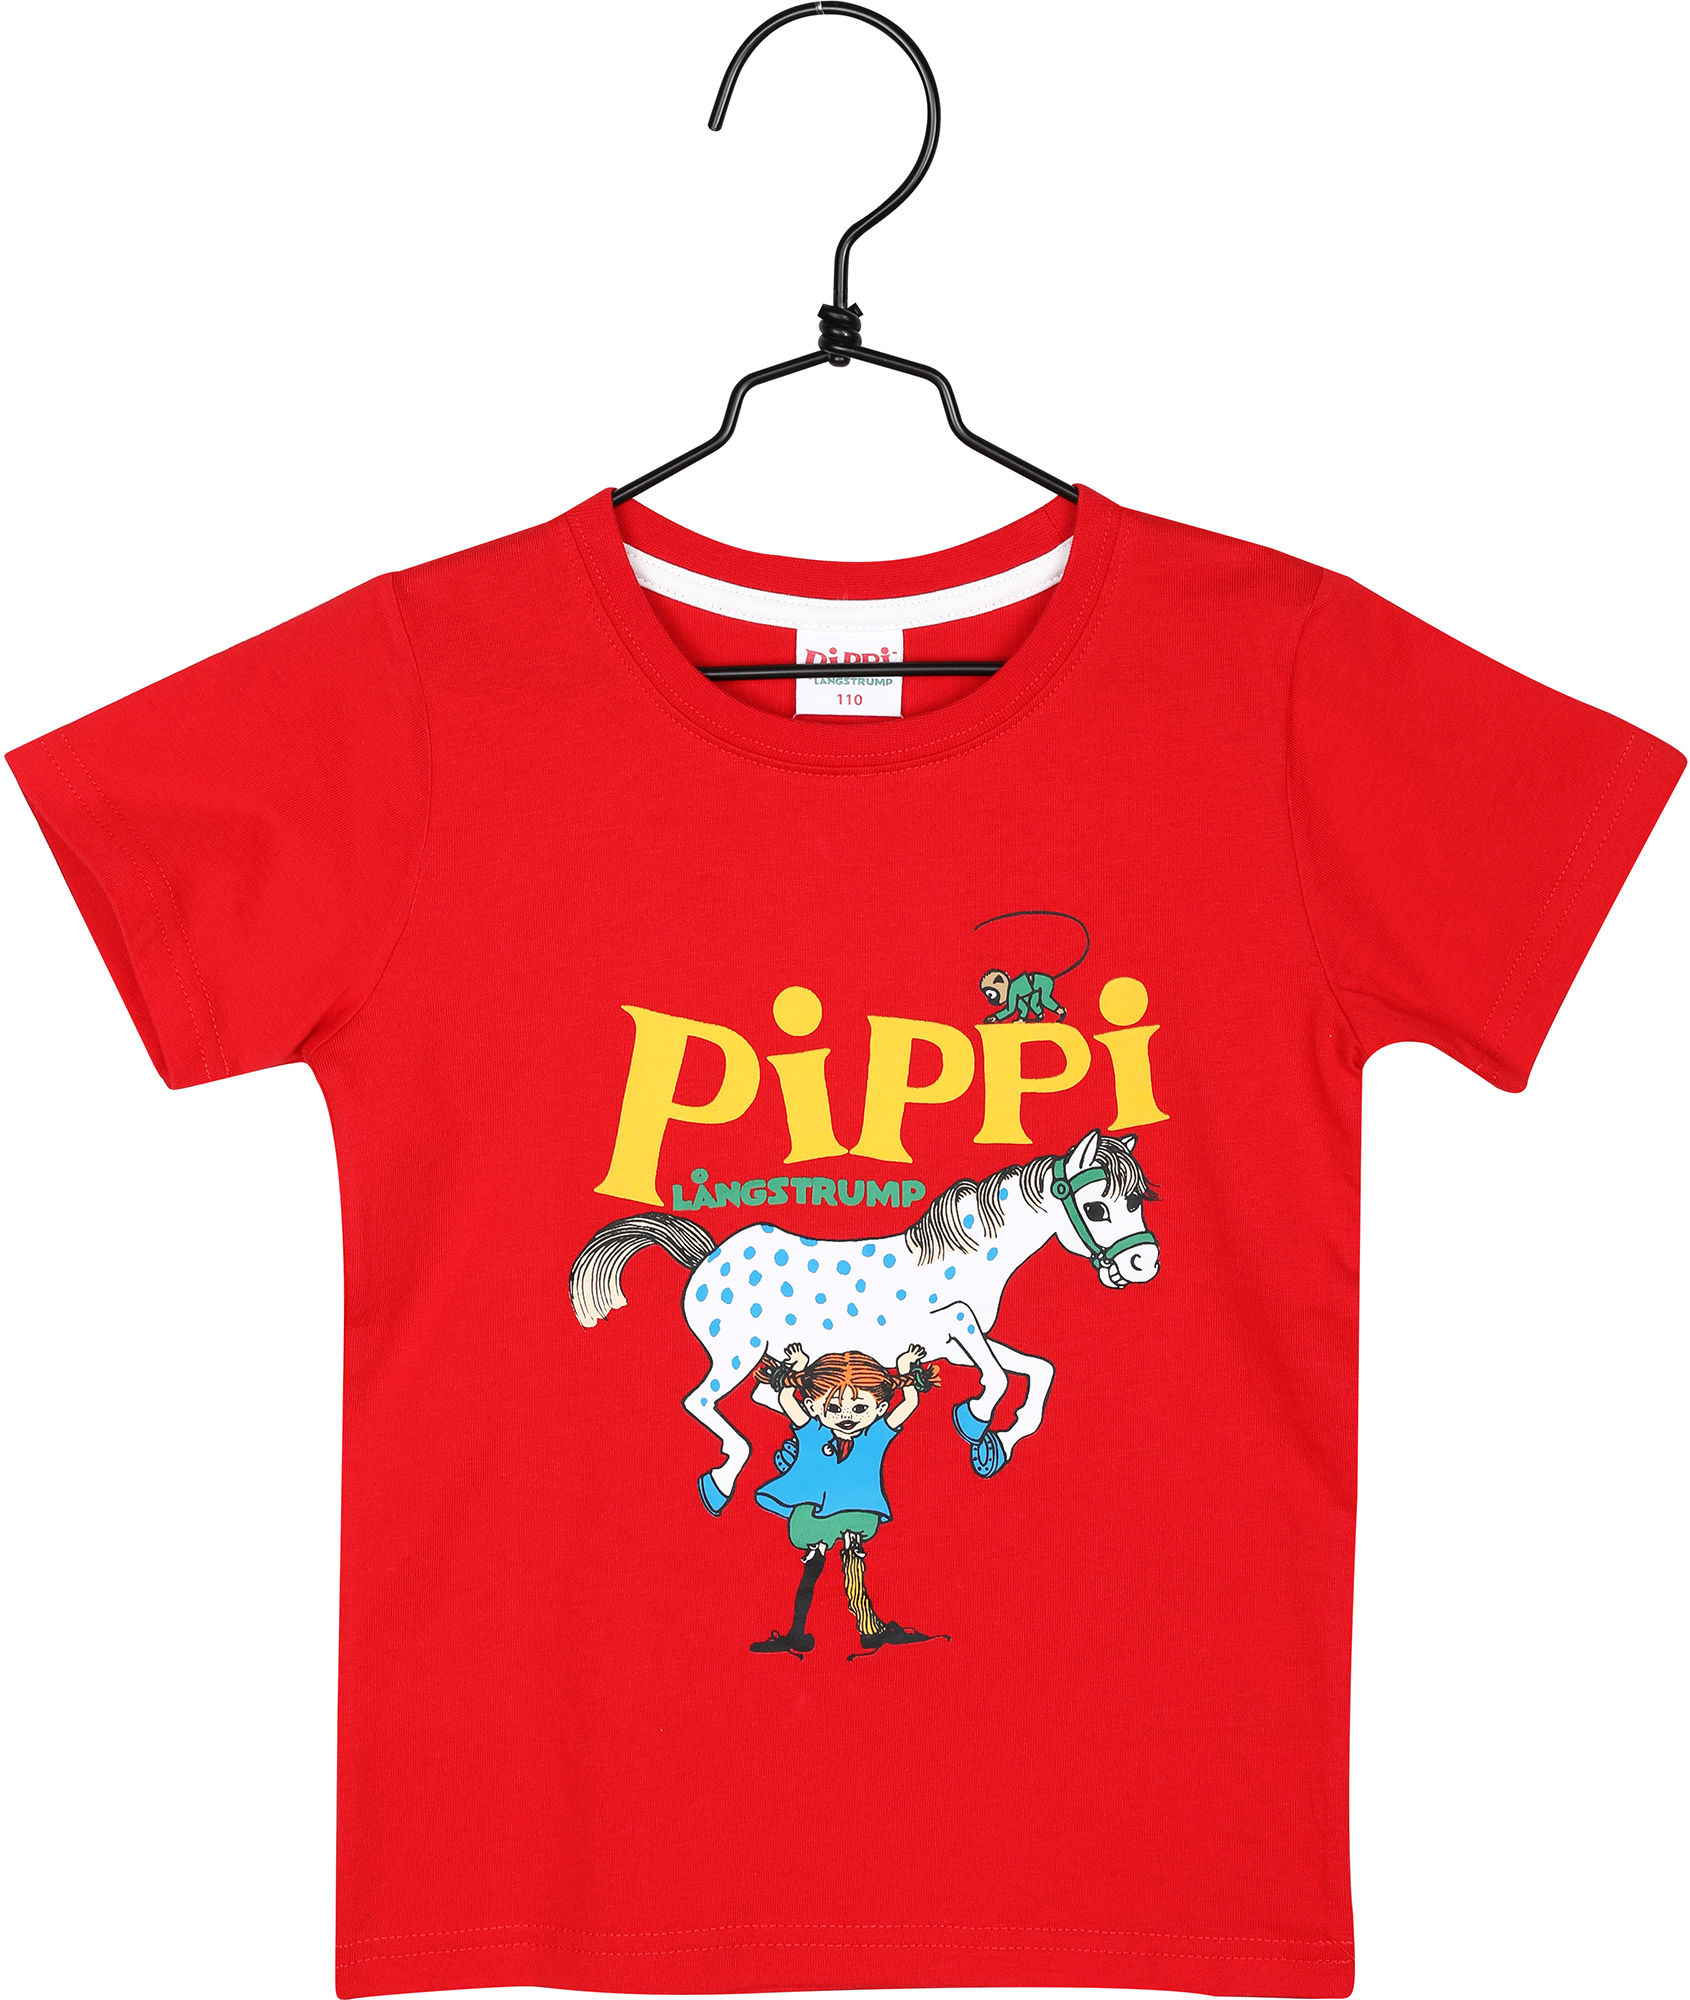 Pippi T-Shirt, Rød, 86